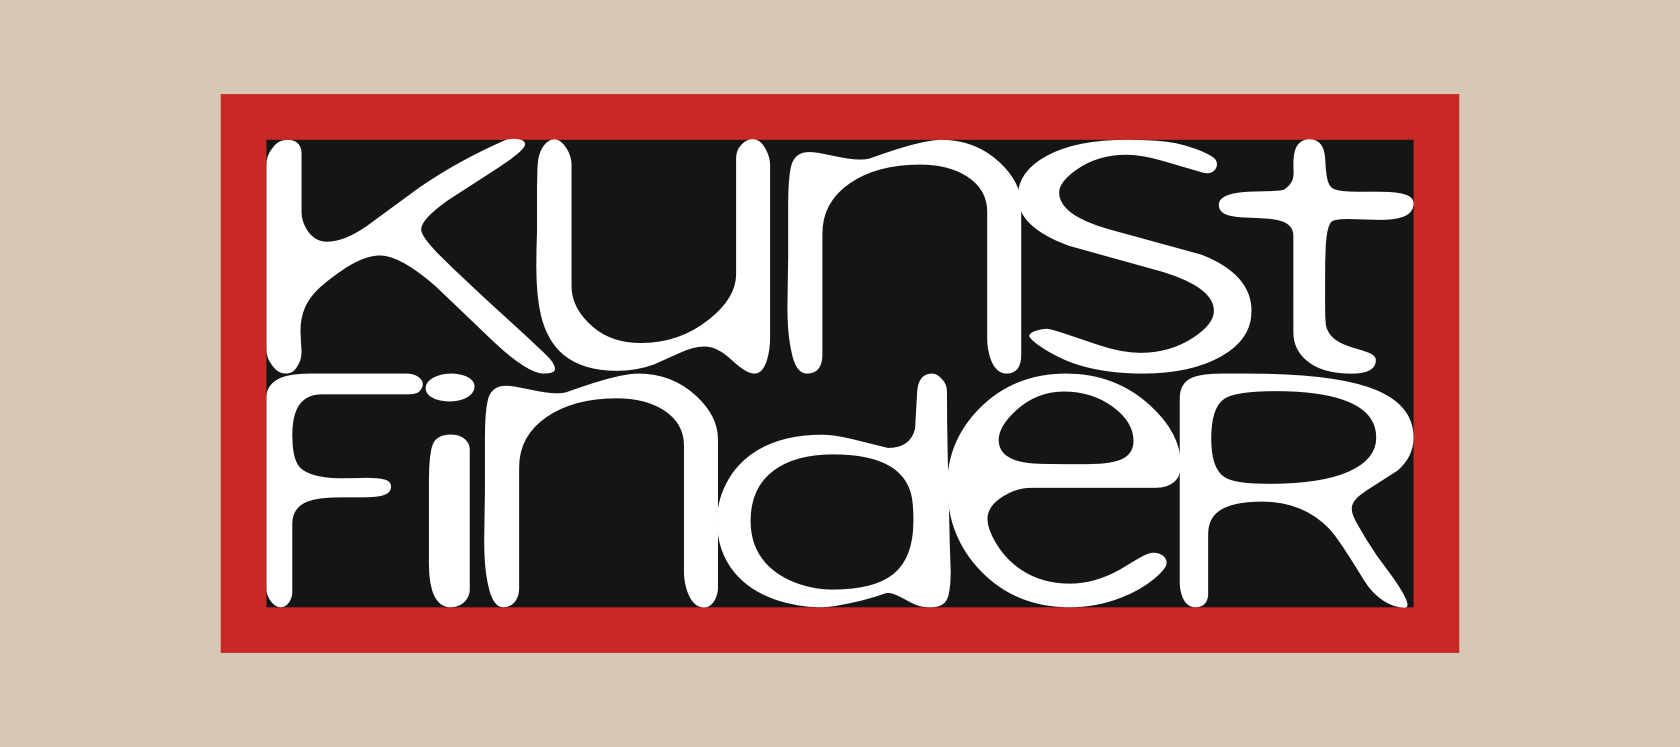 Logo - Kunstfinder